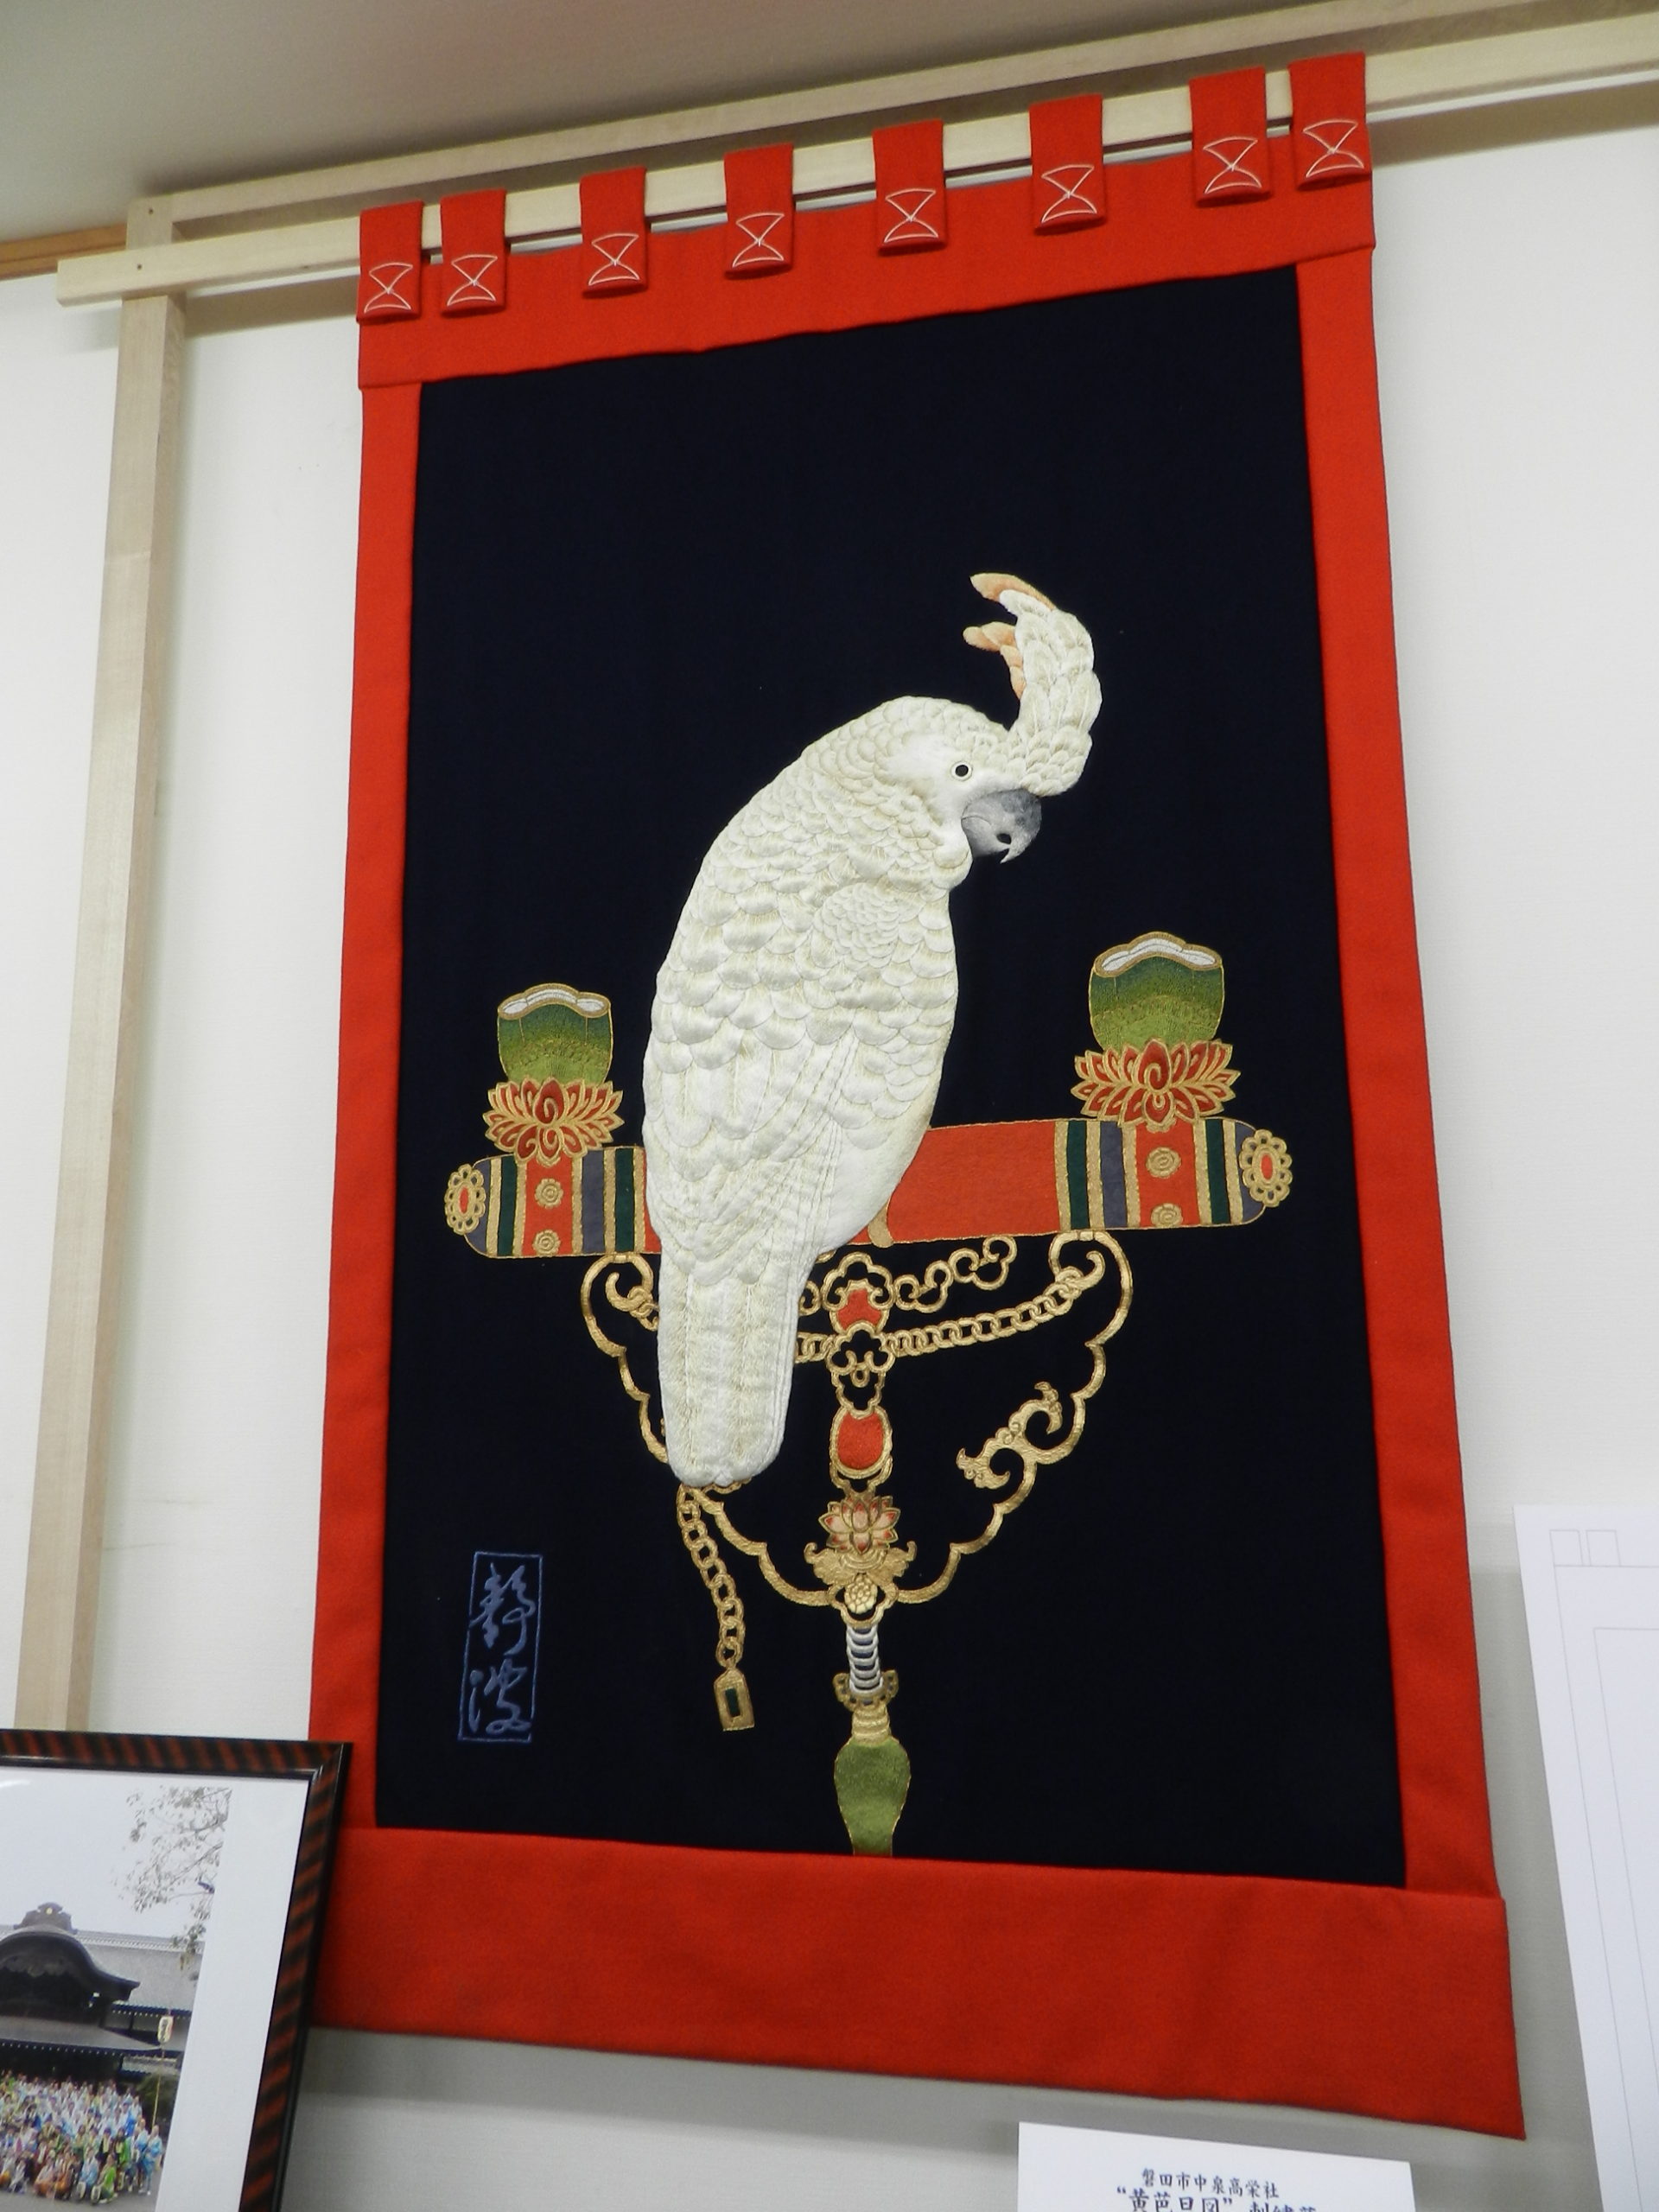 高栄社さんの刺繍幕「黄芭旦図」